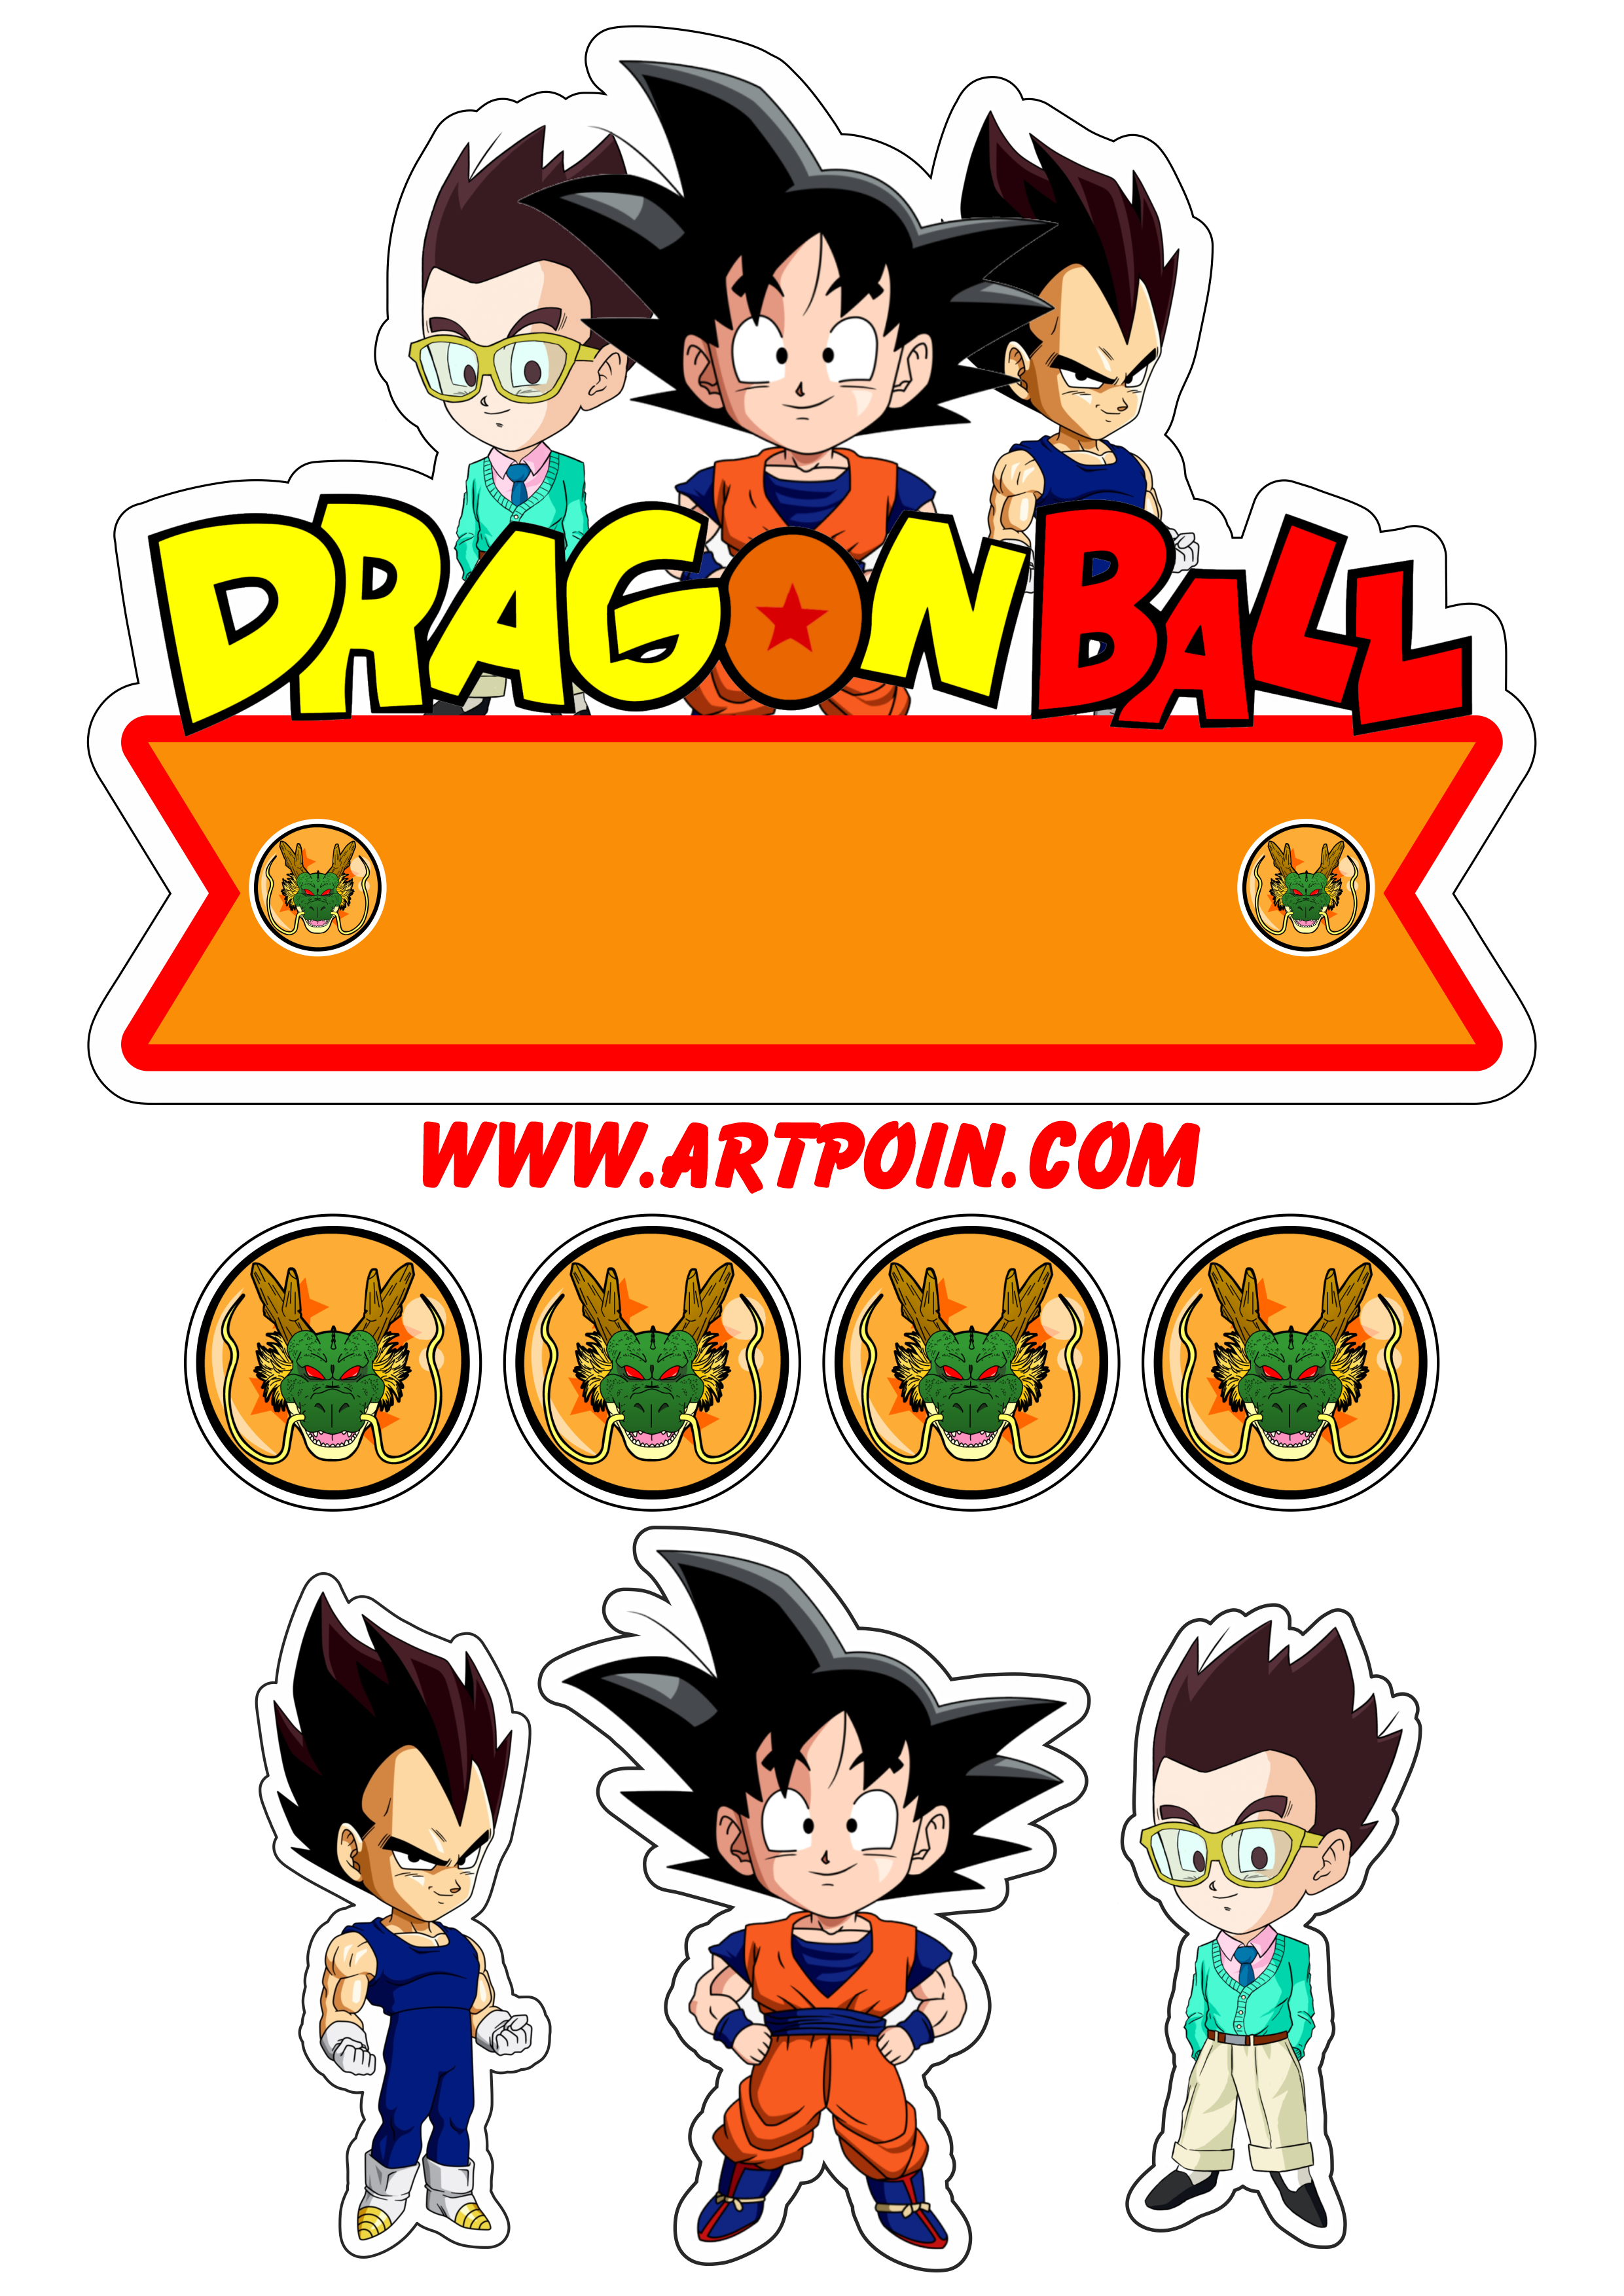 Dragon ball Z topo de bolo festa de aniversário infantil Goku Vegeta Gohan personagens artigos de papelaria desenhos cute chibi png